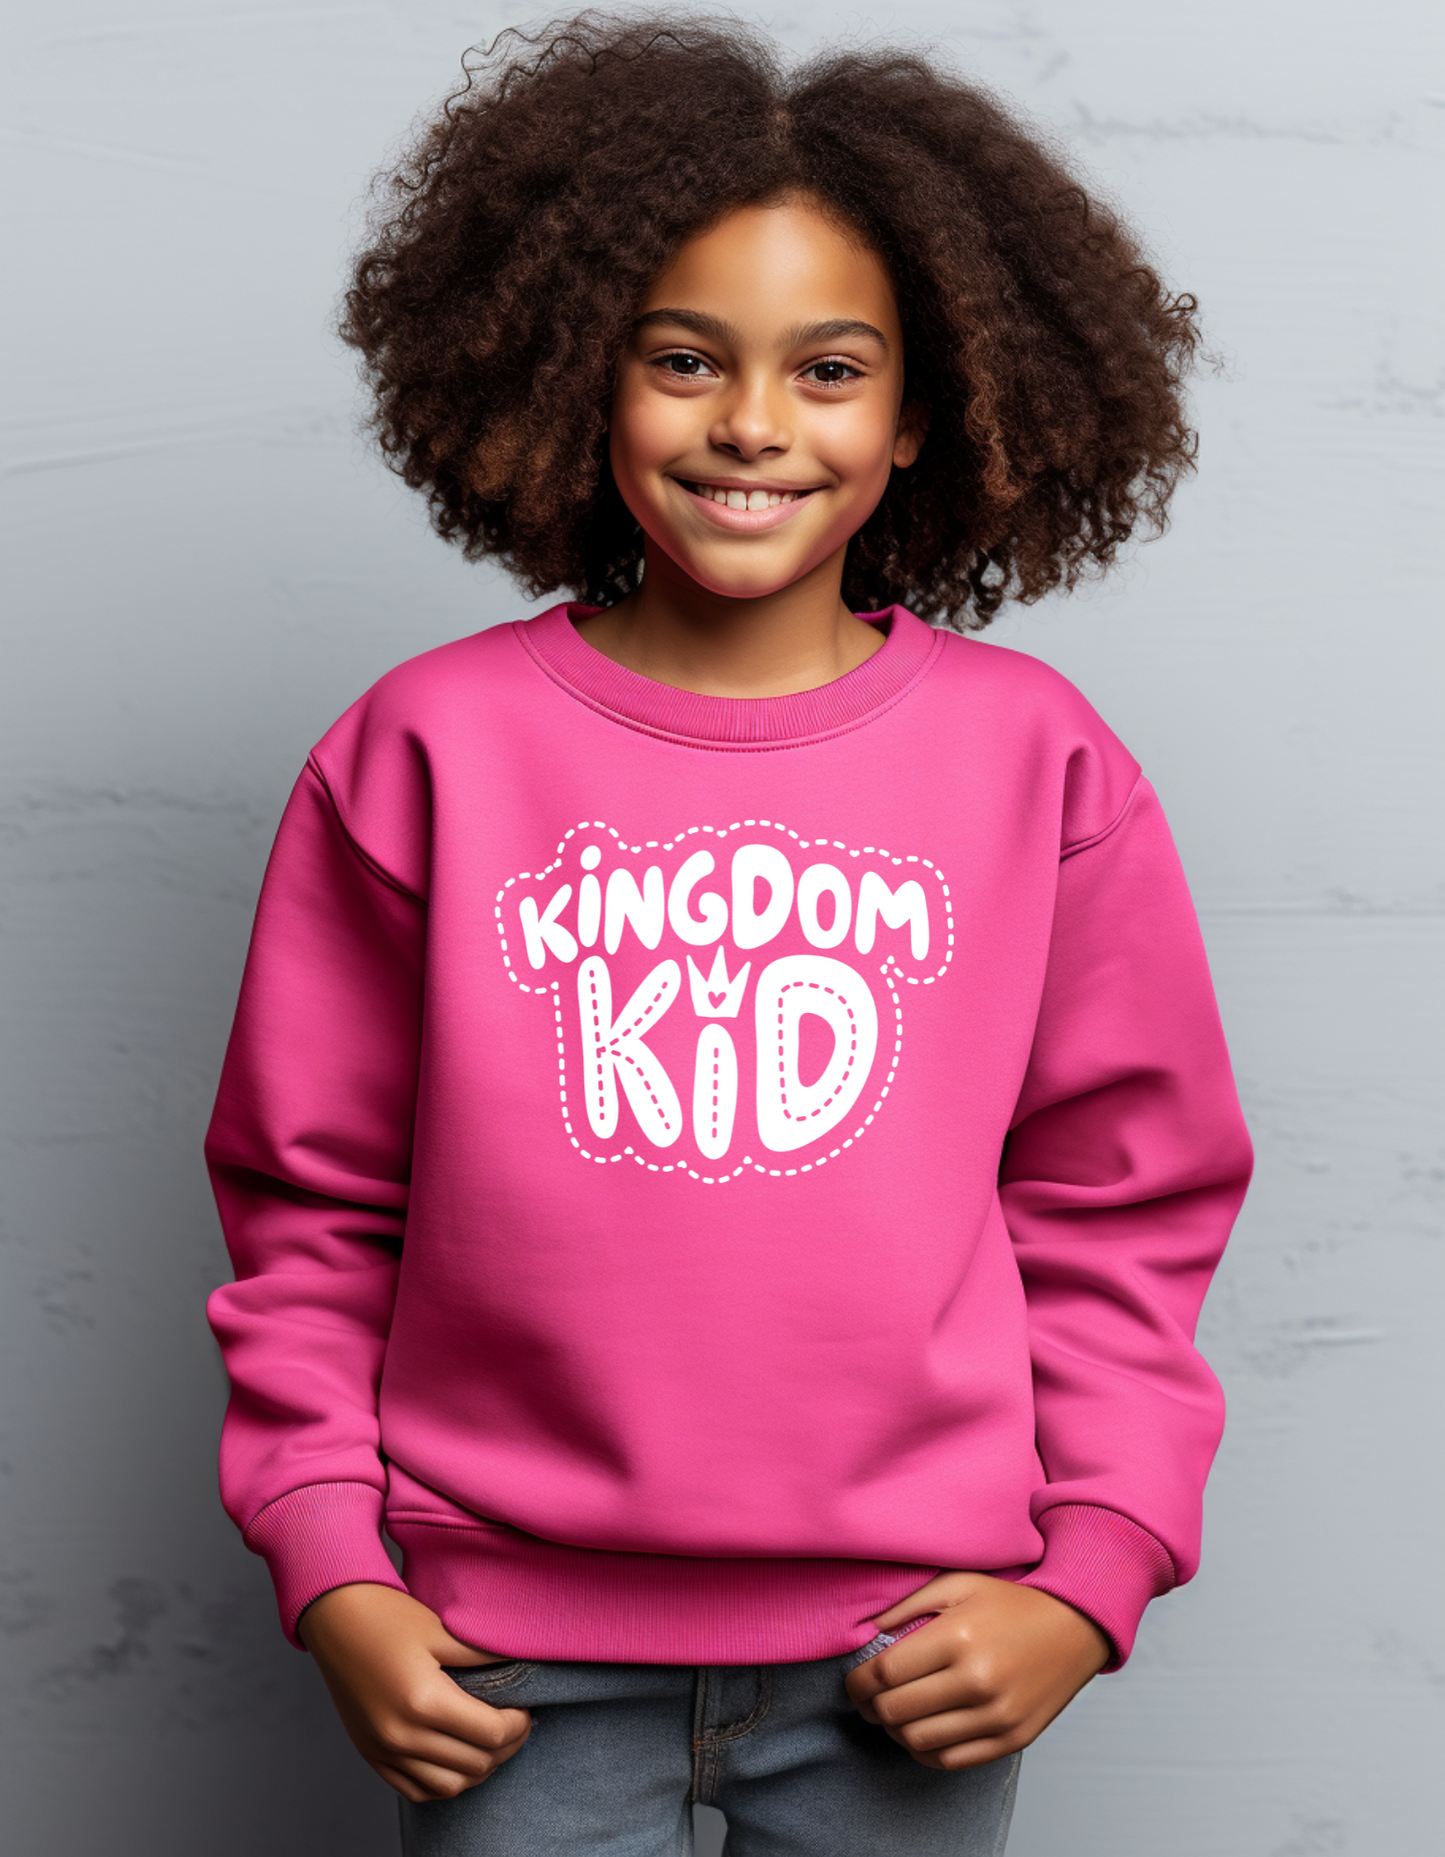 Kingdom Kid Sweater